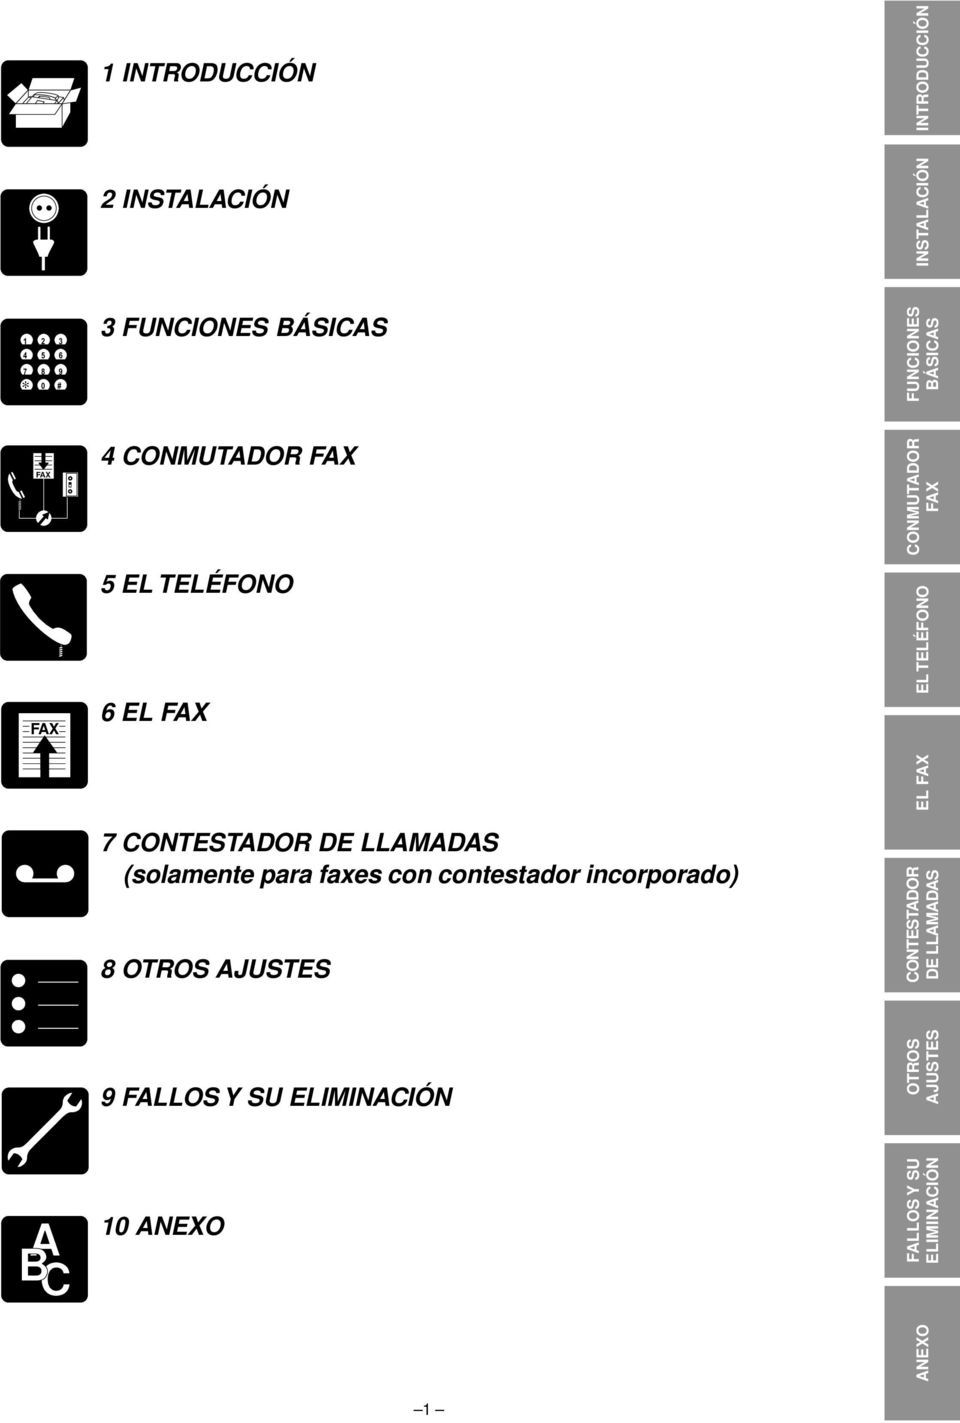 DE LLAMADAS (solamente para faxes con contestador incorporado) OTROS AJUSTES CONTESTADOR